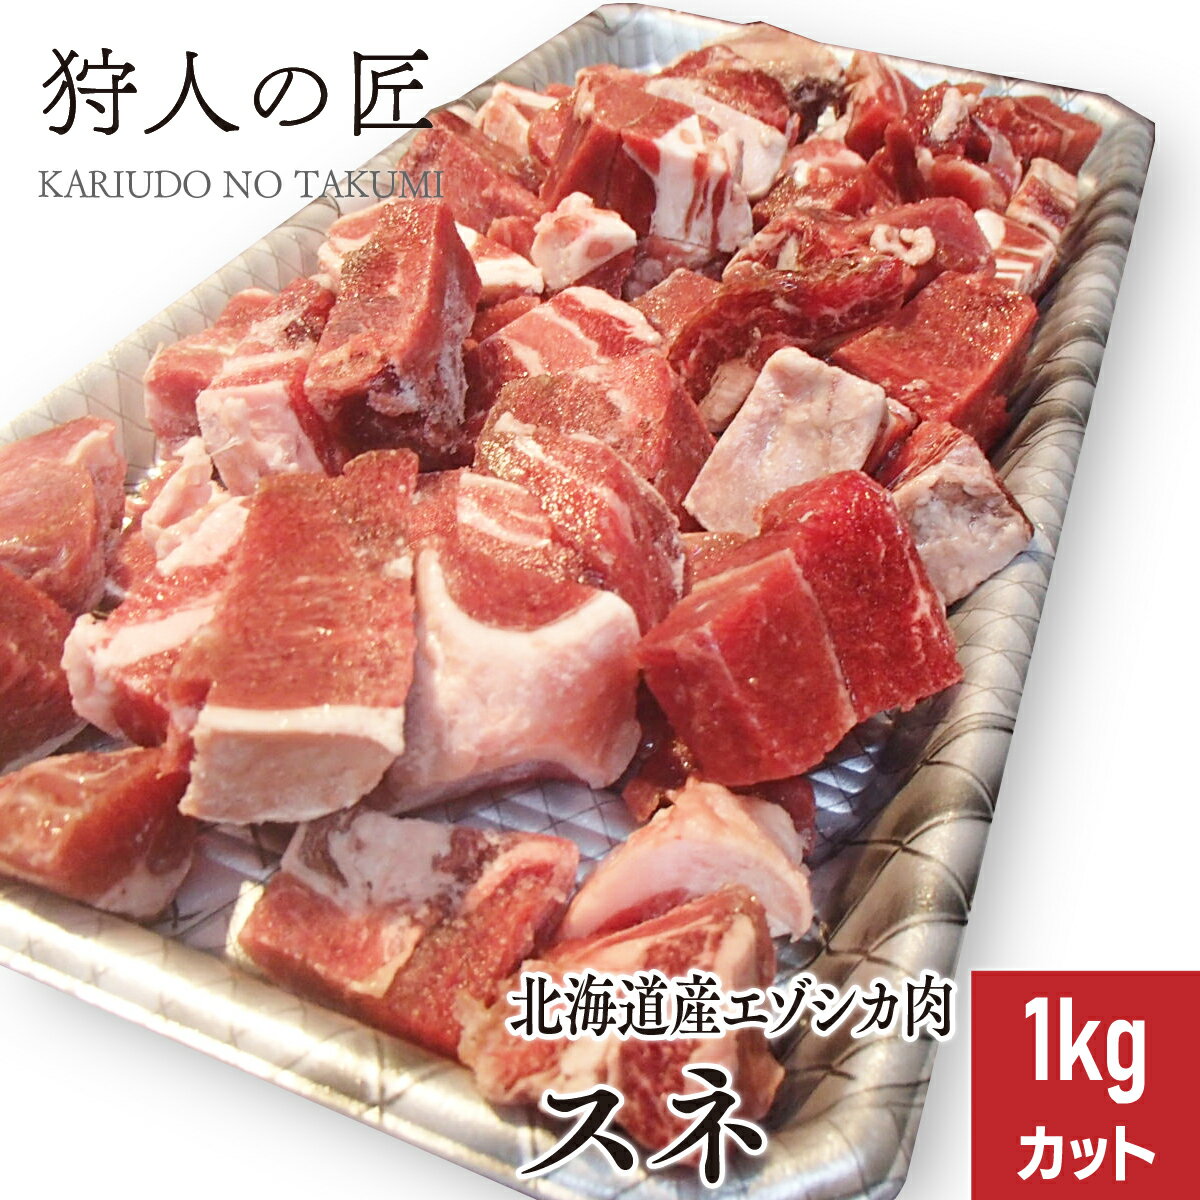 【北海道稚内産】エゾ鹿肉 カルビ 1kg (ブロック)【無添加】【エゾシカ肉/蝦夷鹿肉/えぞしか肉/ジビエ】